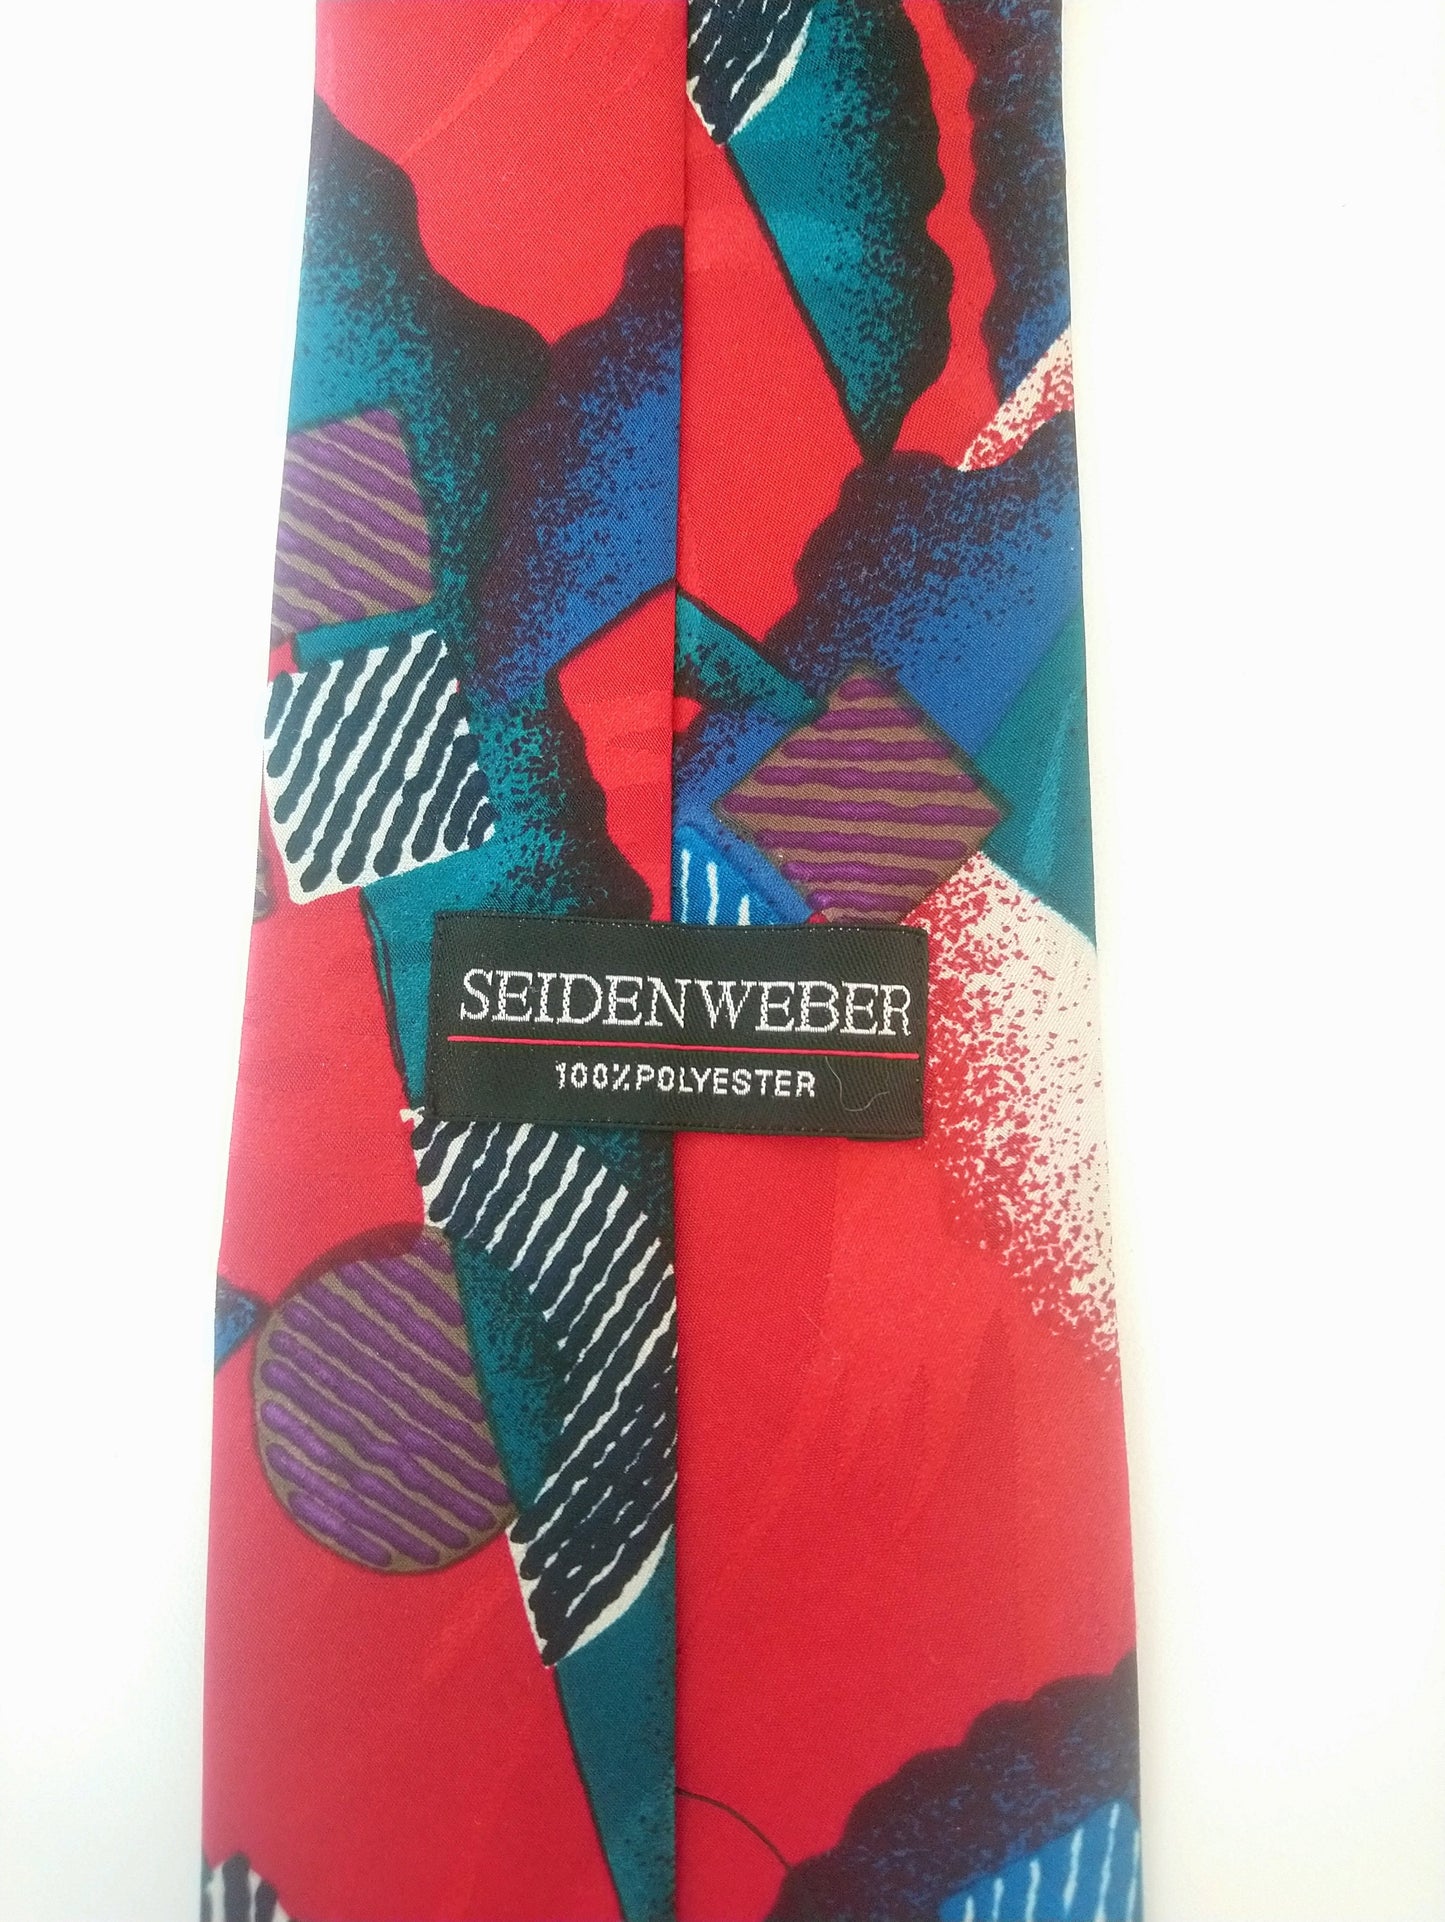 Vintage Seidenwber Tie. Motivo azul rojo. Poliéster.